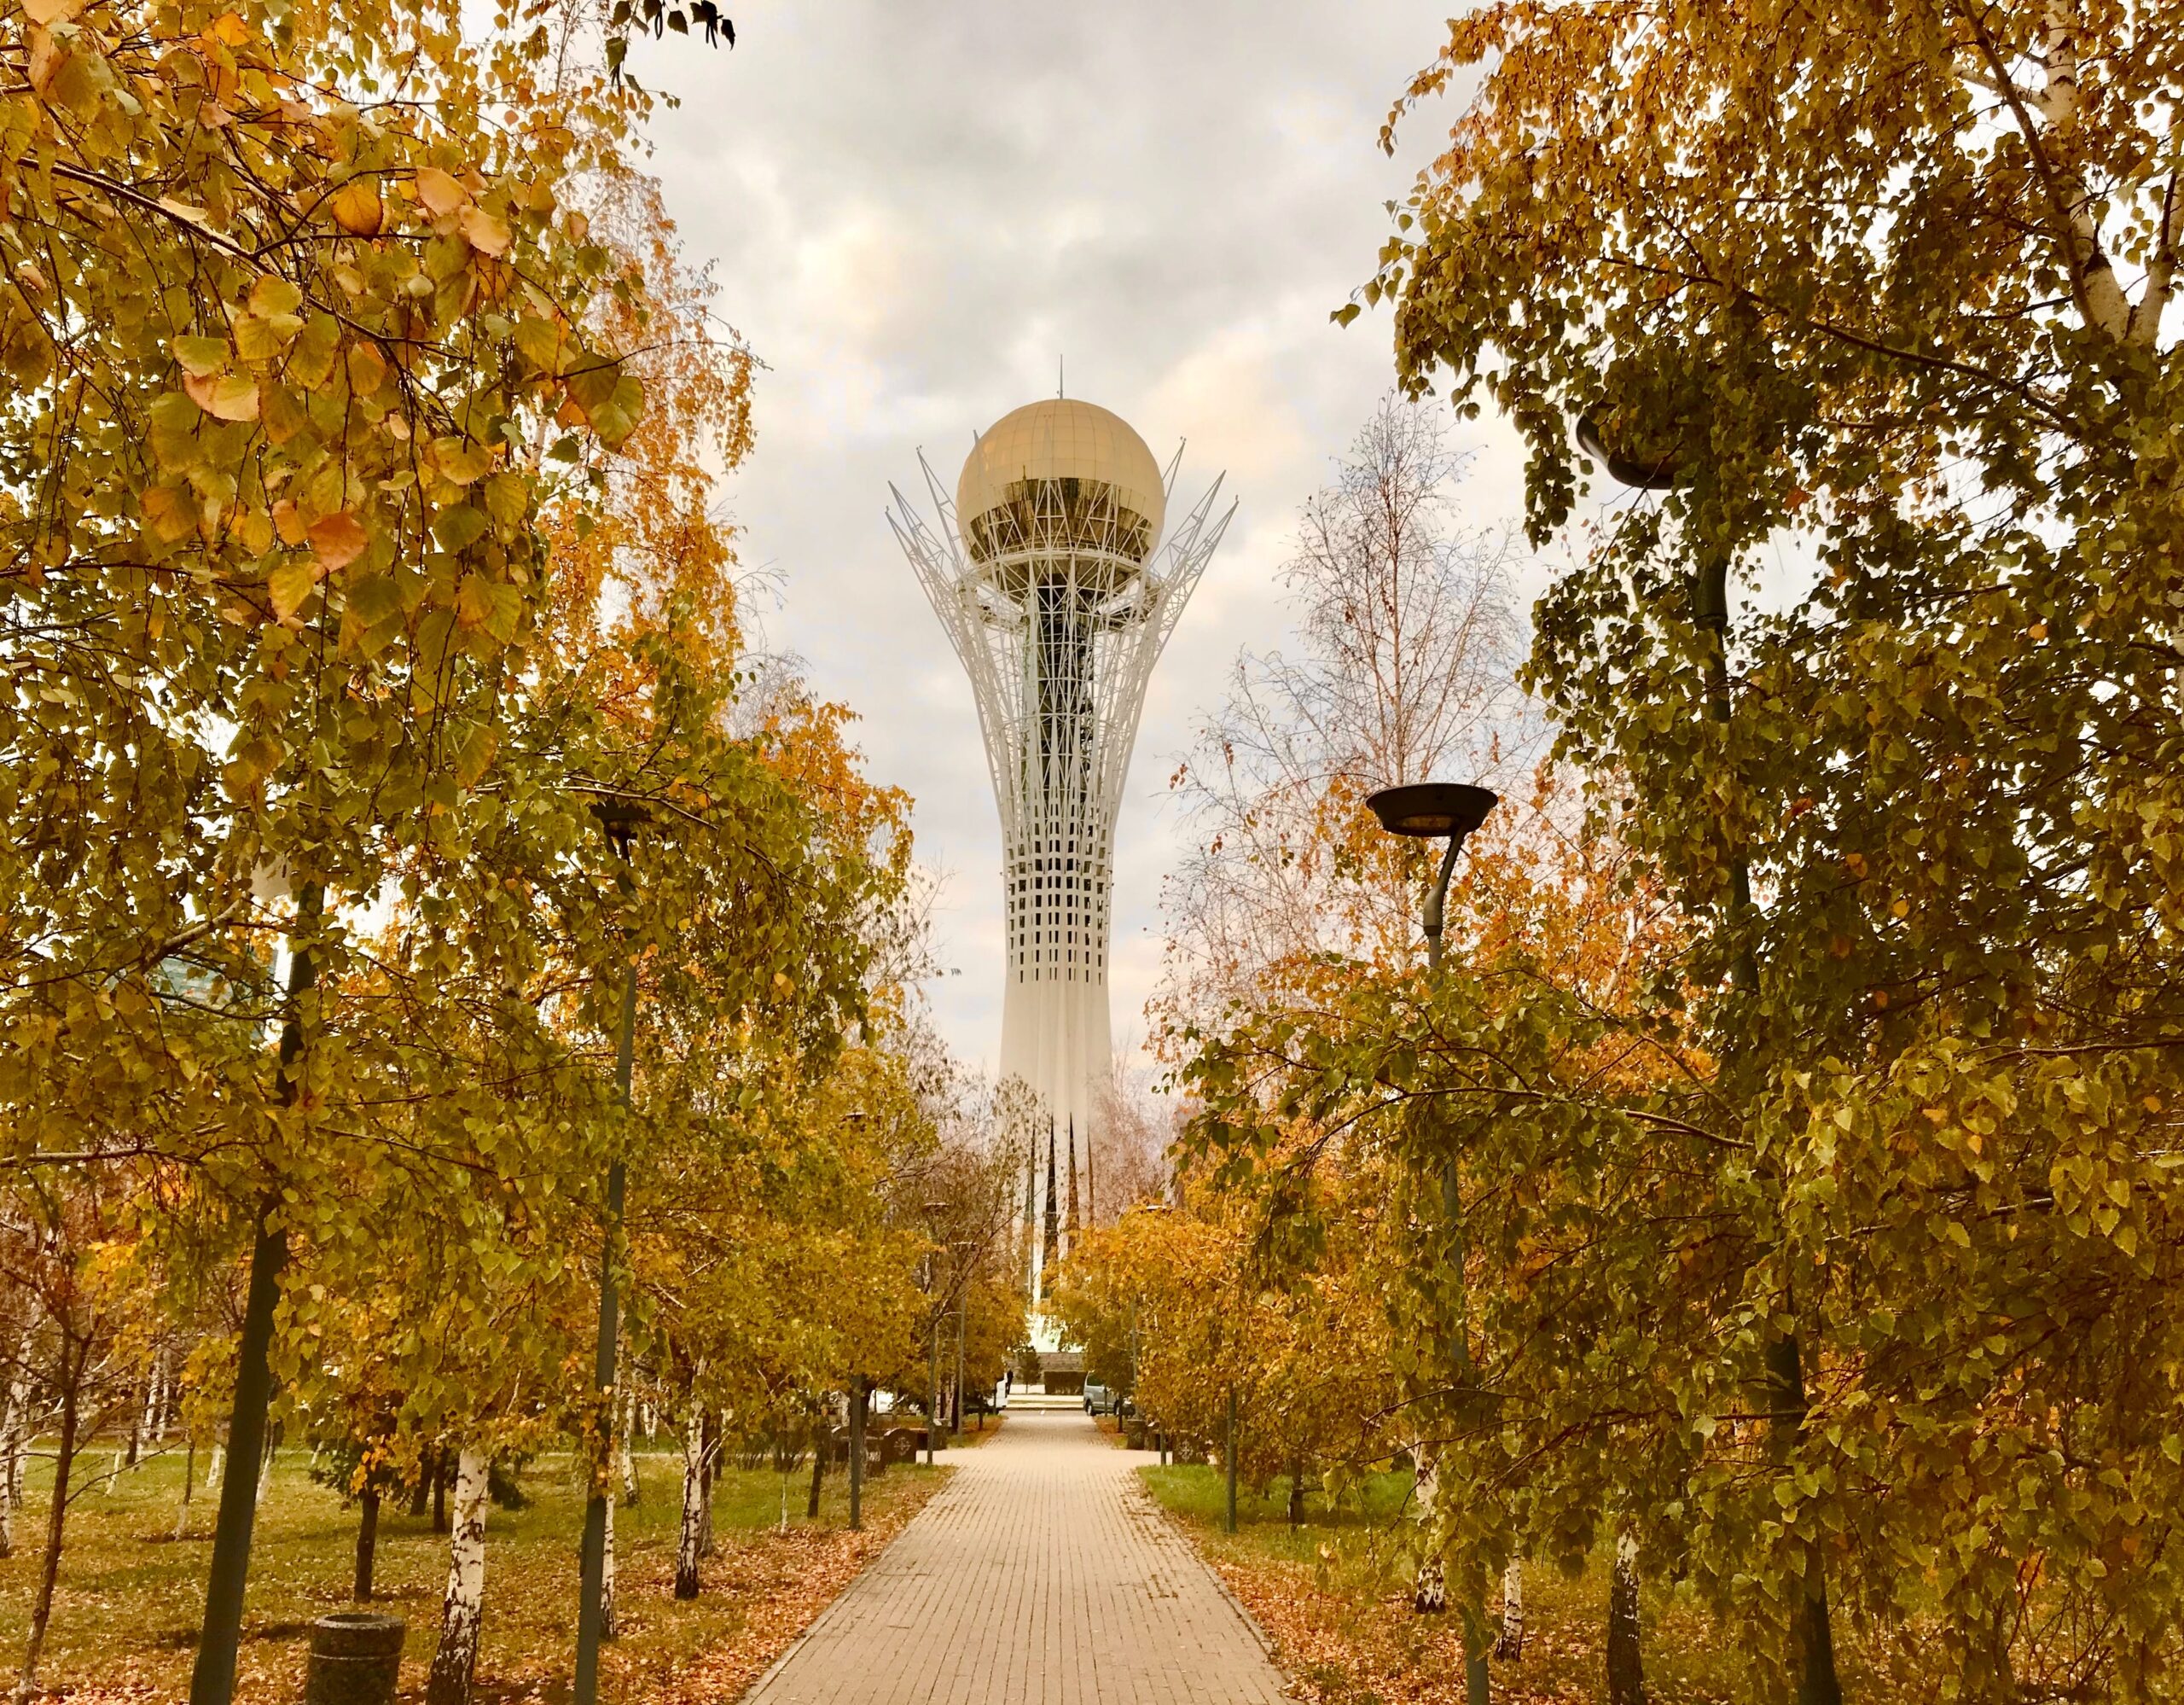 Nur-Sultan, Nur-Sultan, Kazakhstan